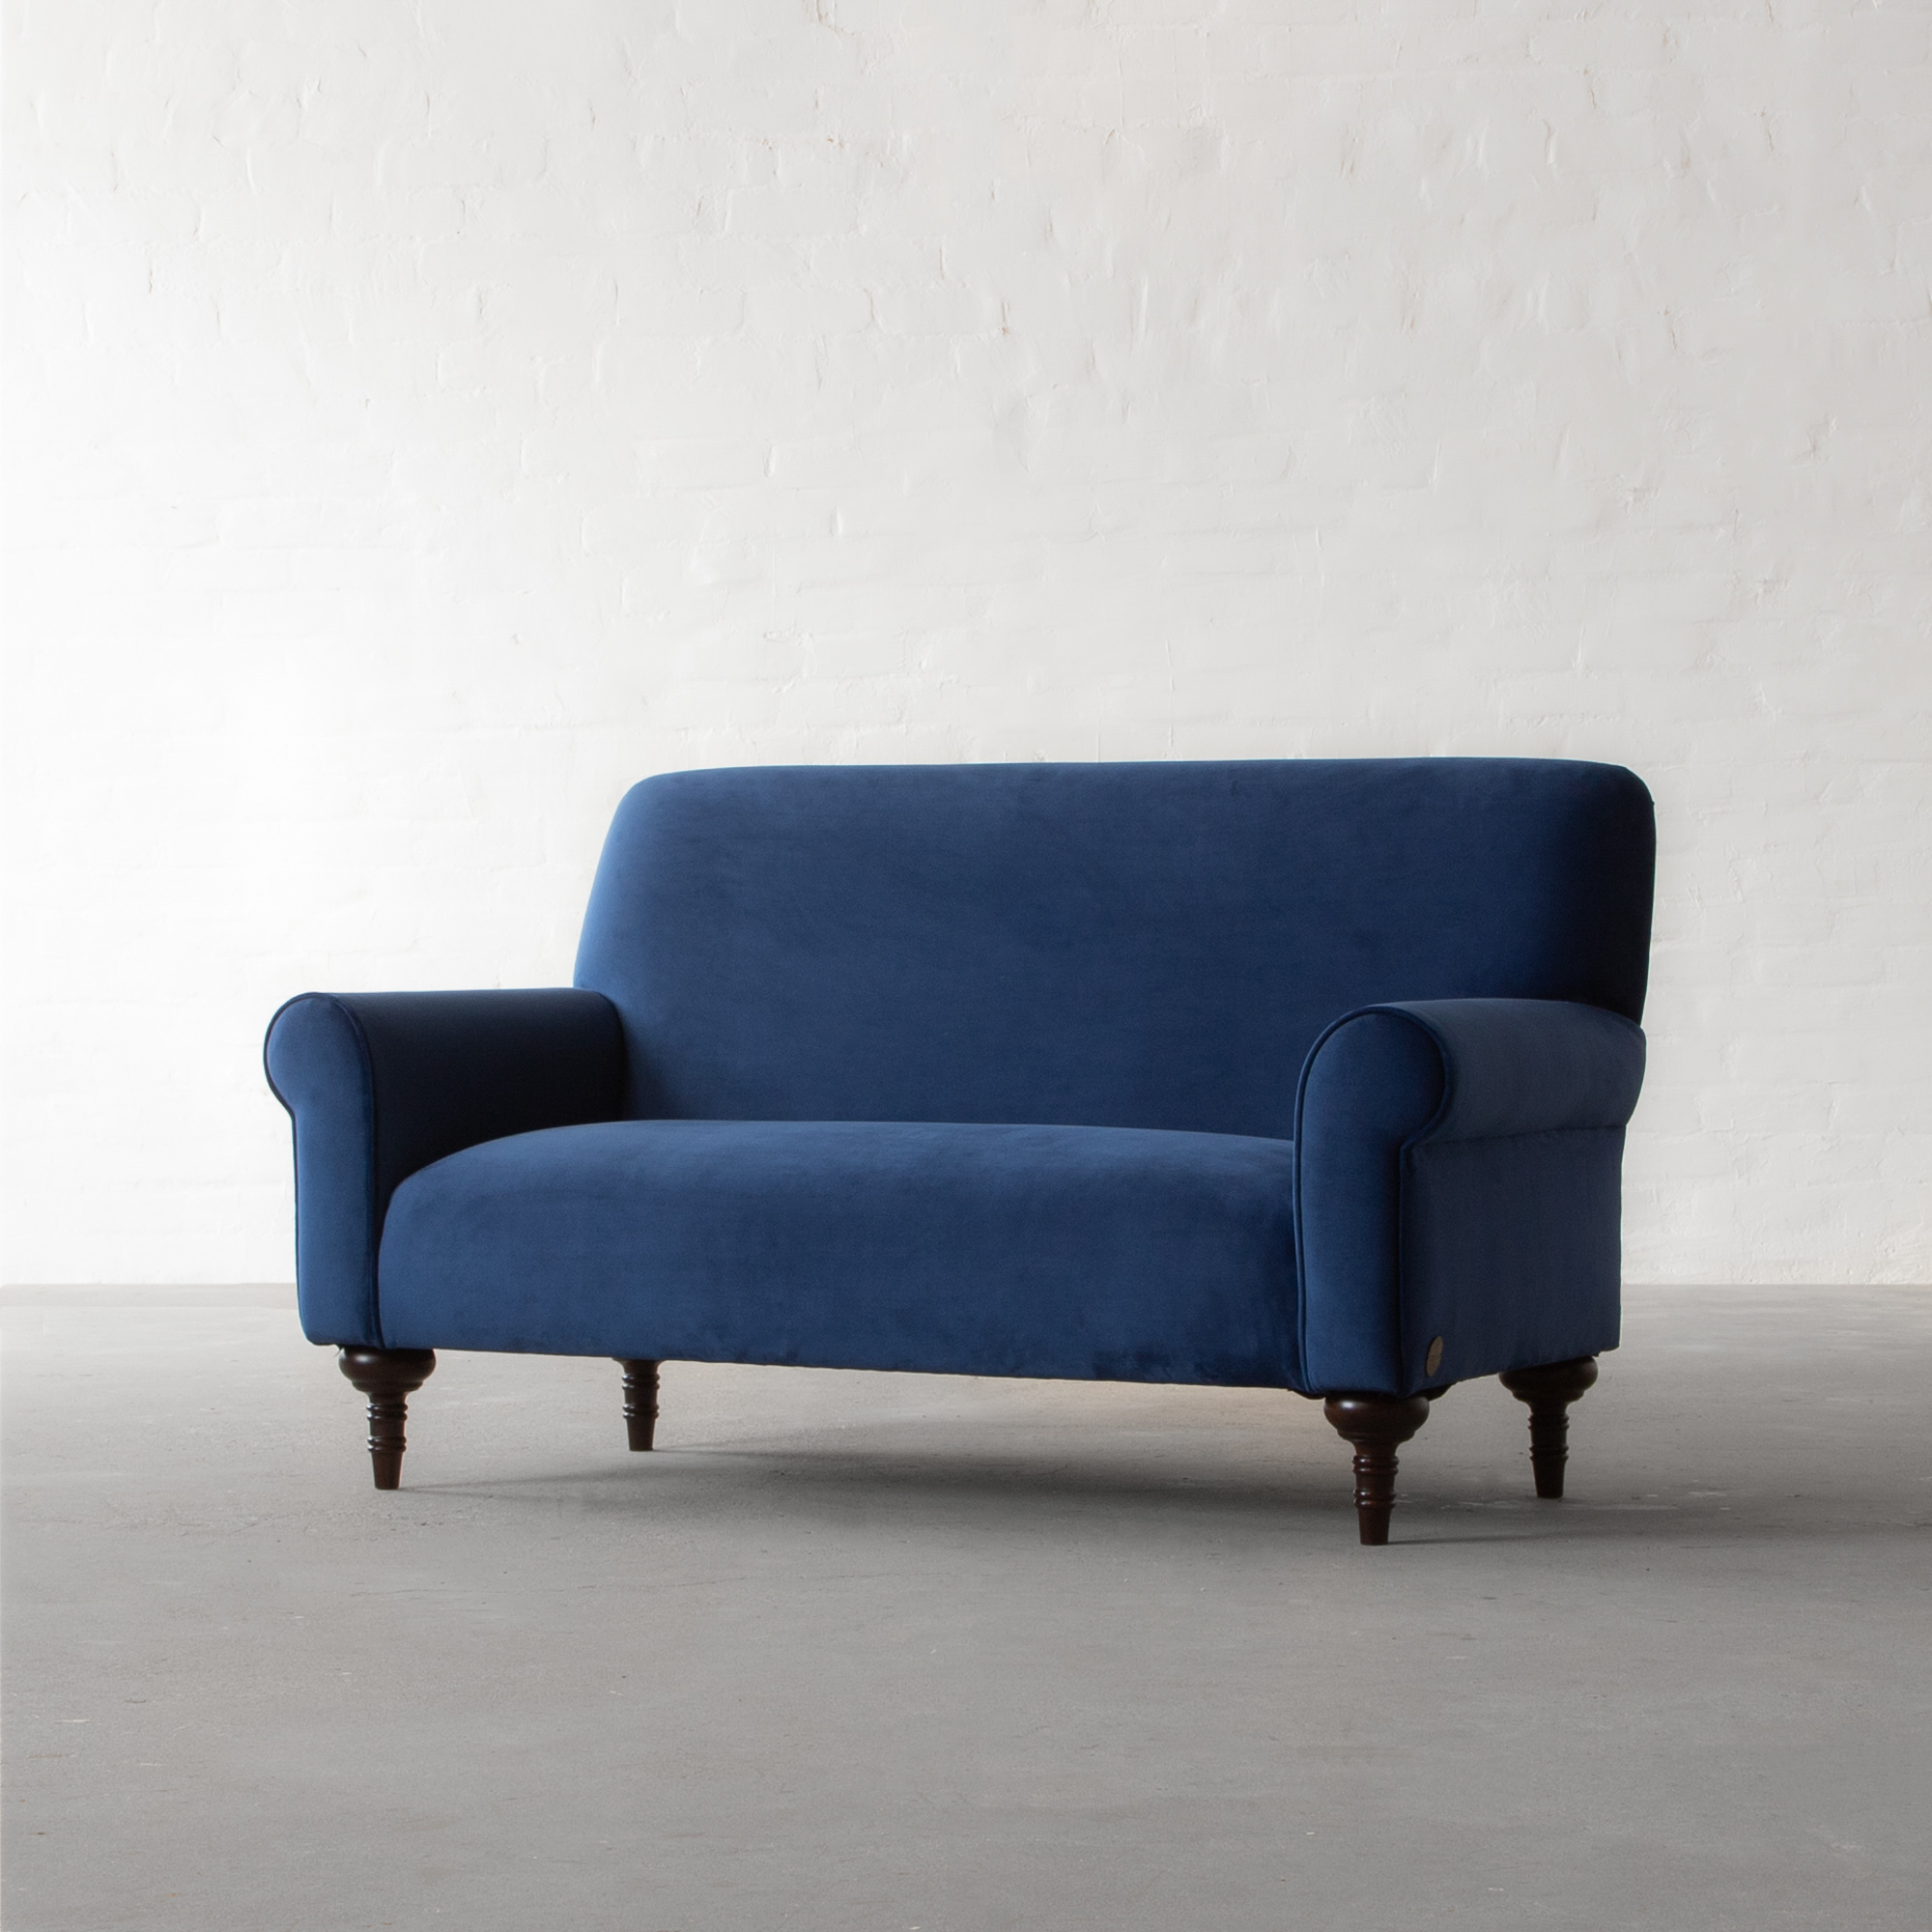 Brera Non-Tufted Sofa collection